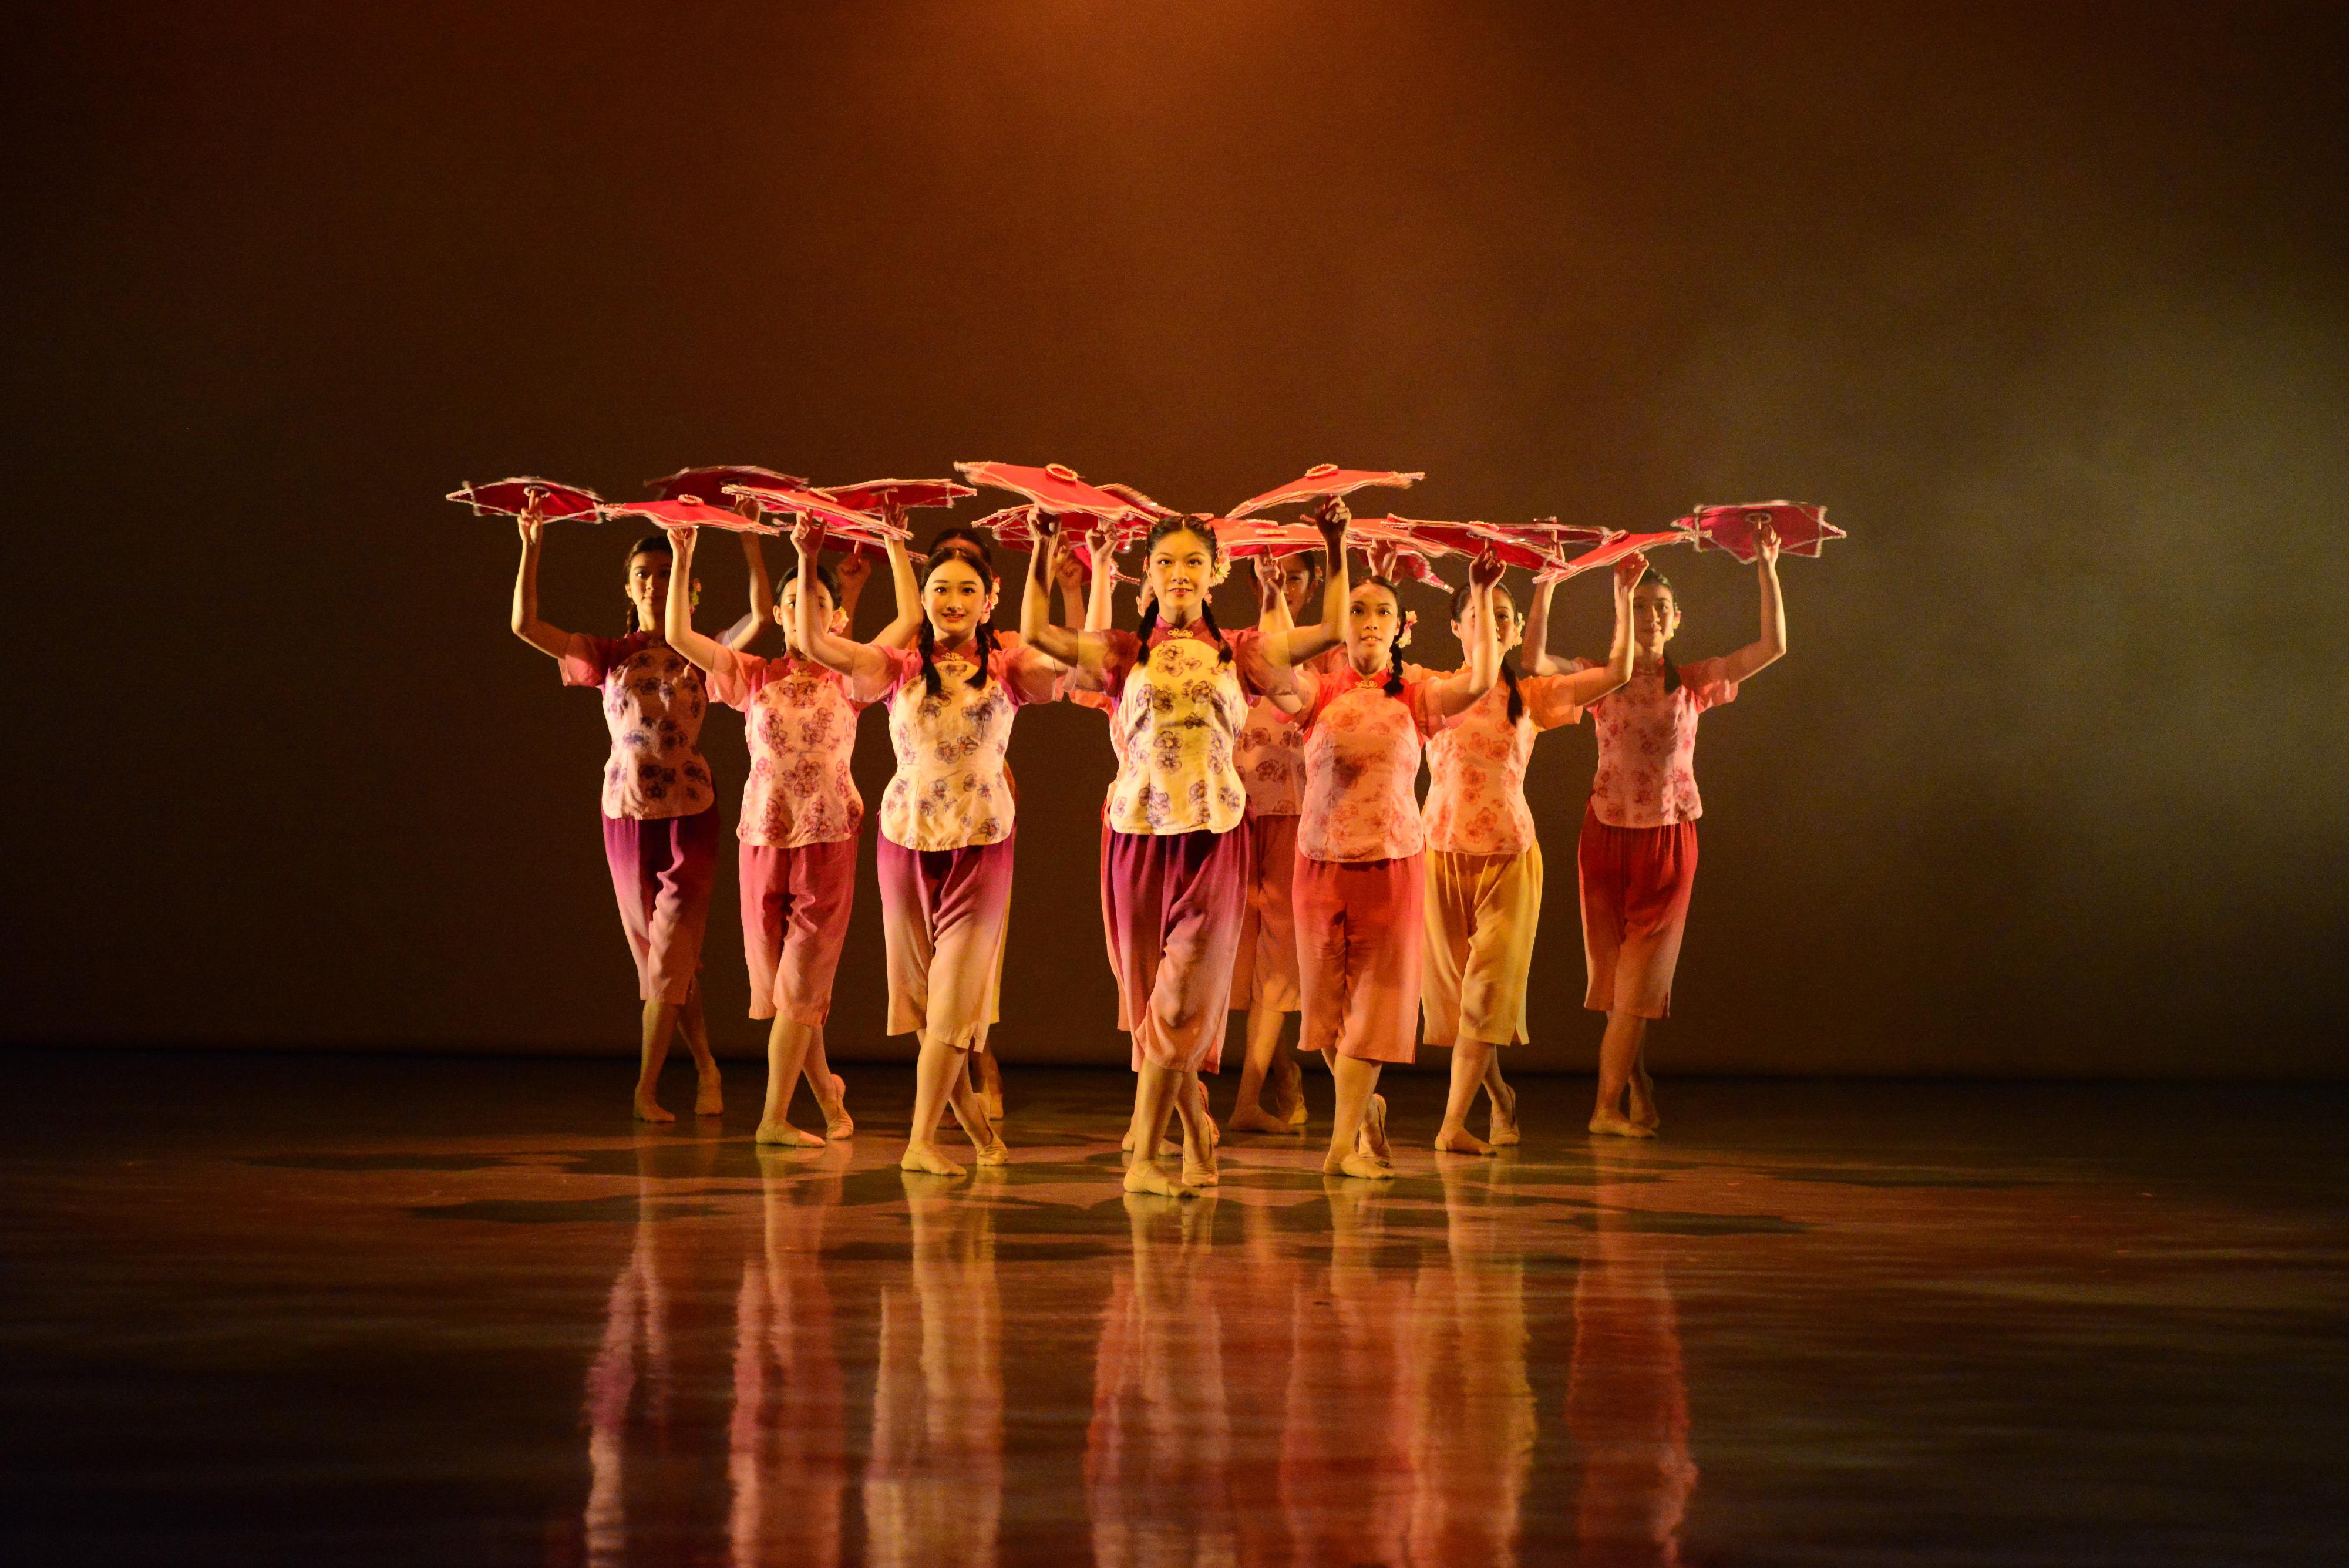 康樂及文化事務署十月至十二月在轄下五個新界表演場地舉辦「演藝嘉年華2023」，最後一場嘉年華將於十二月十日（星期日）下午在葵青劇院舉行，歡迎市民參與。香港演藝學院學生將在葵青劇院帶來中國舞、芭蕾舞和現代舞表演。